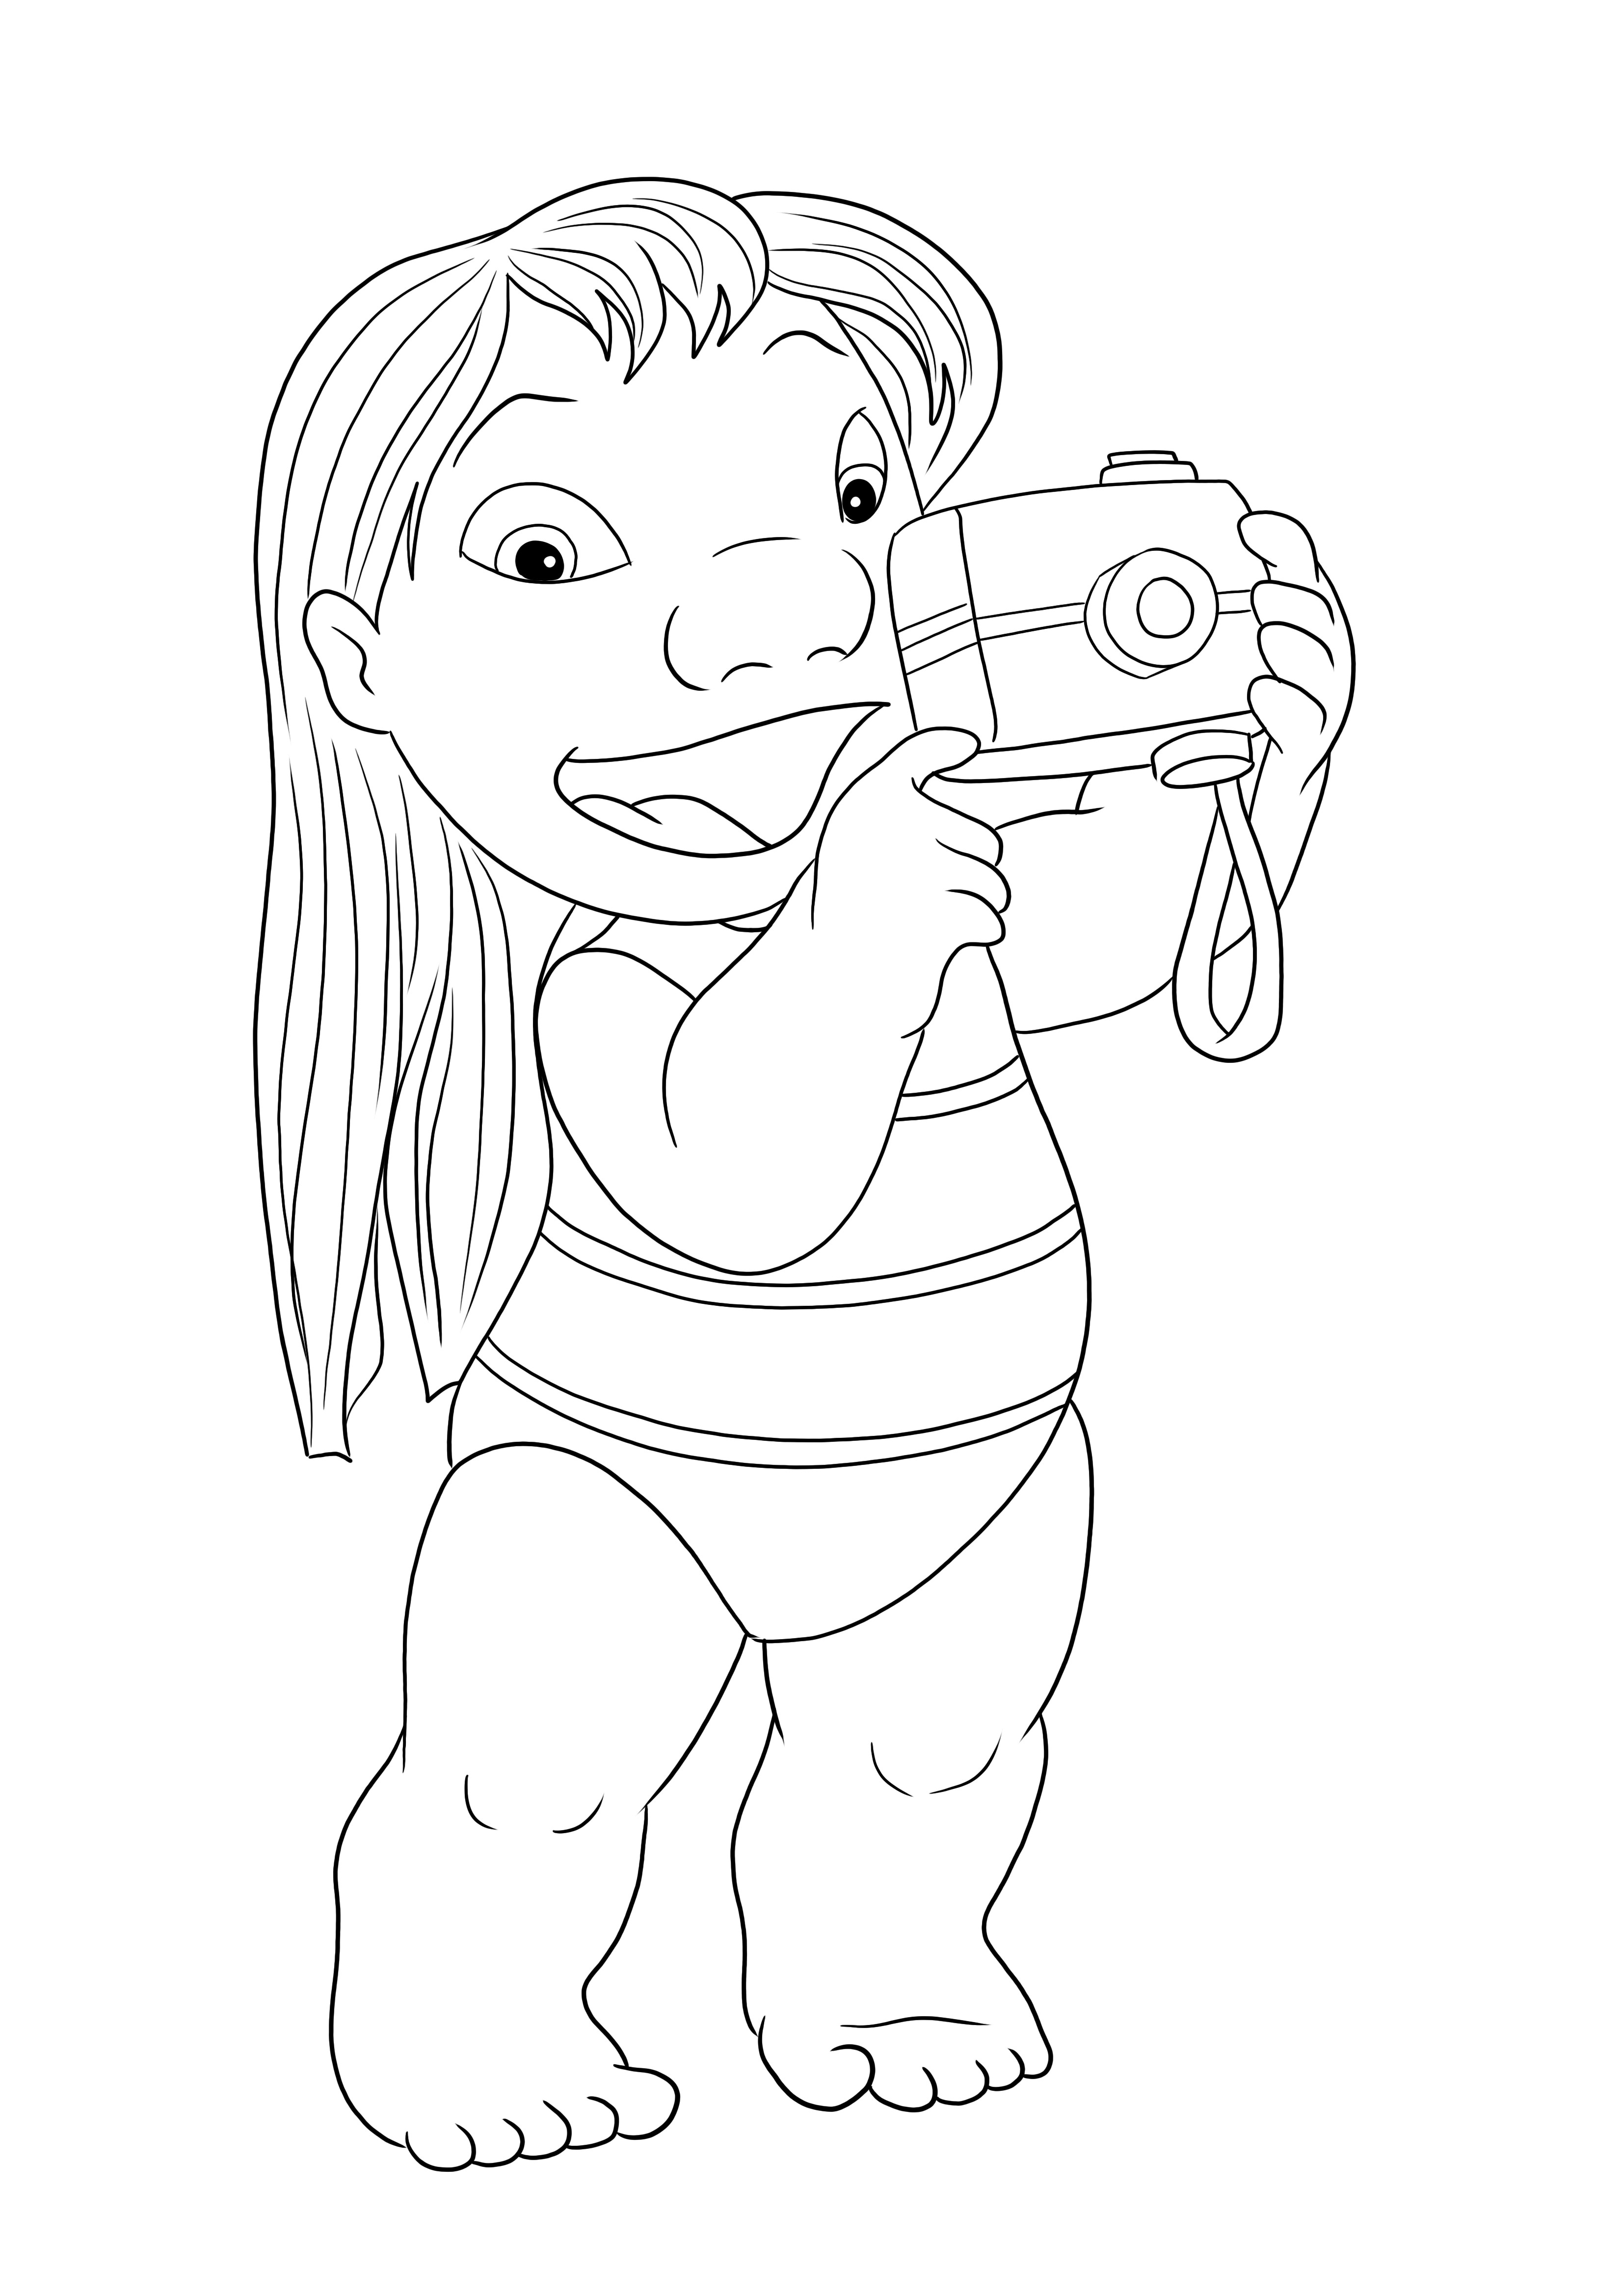 Desenho de Lilo tirando uma foto para colorir para download e impressão grátis